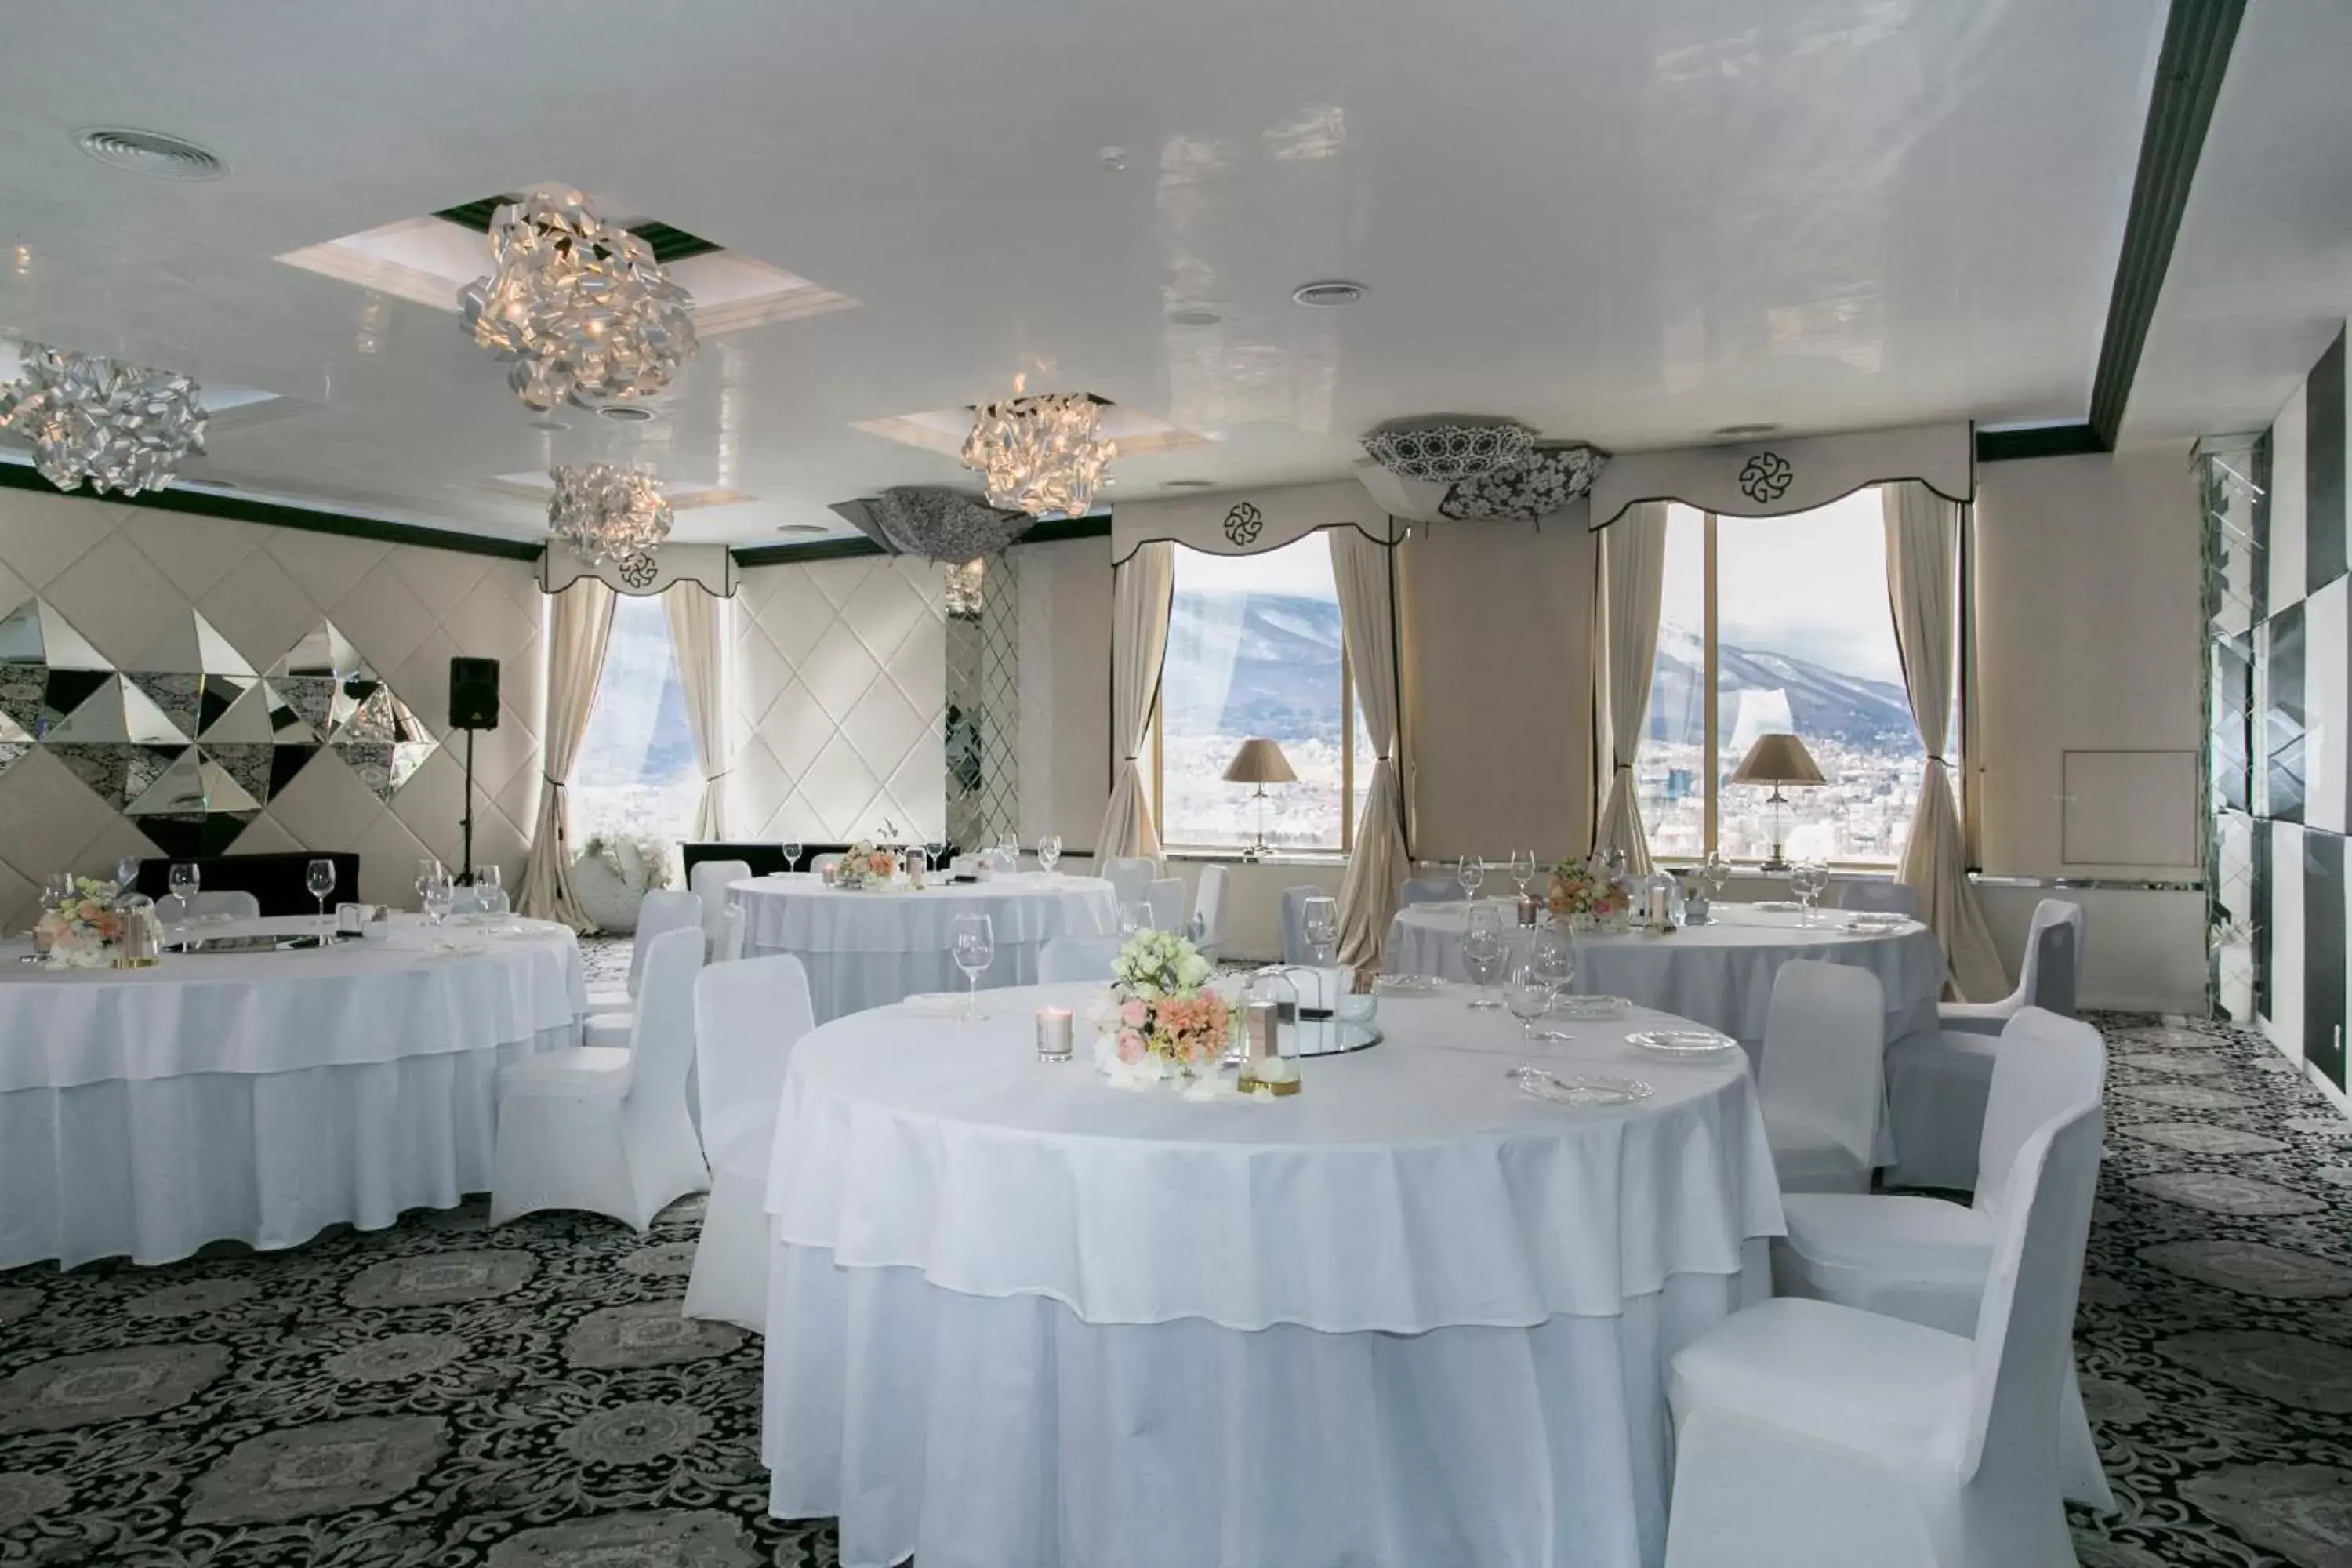 Banquet/Function facilities, Banquet Facilities in Hotel Marinela Sofia